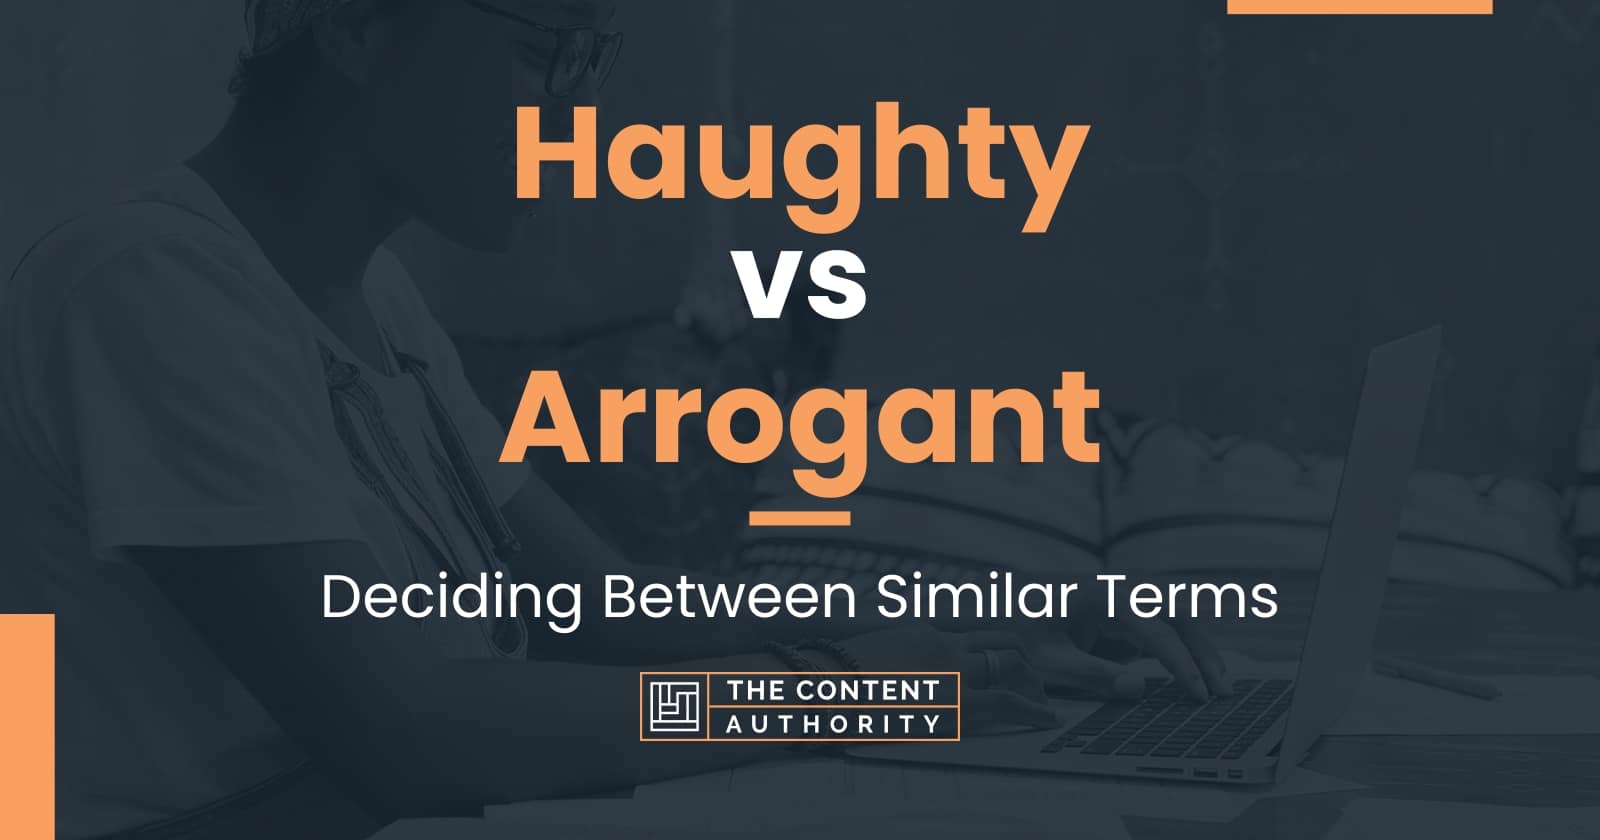 Haughty vs Arrogant: Deciding Between Similar Terms